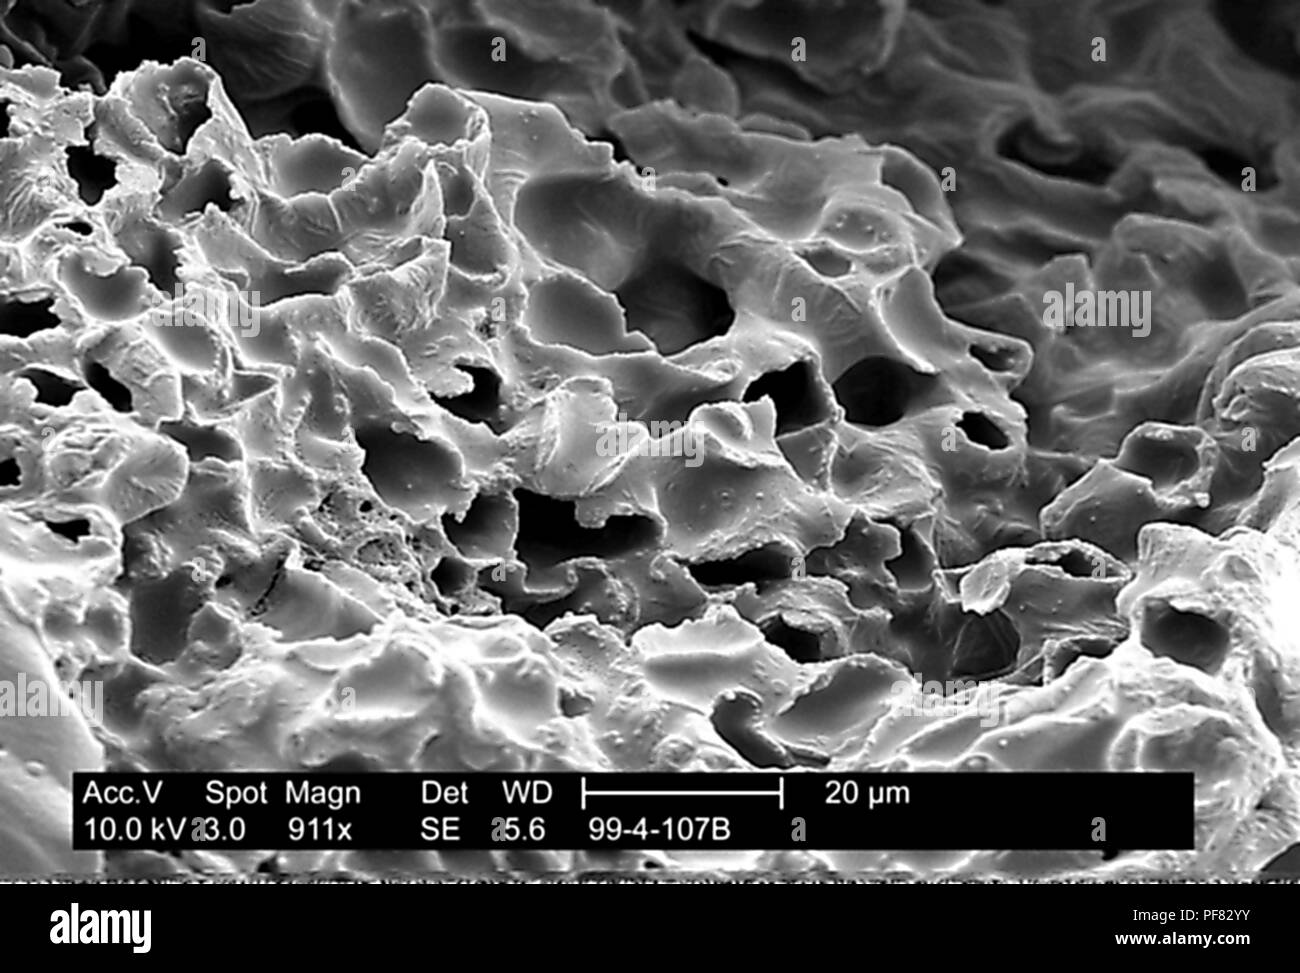 Stark texturierten Oberfläche einer petersilie Blatt 911 x vergrößert dargestellt Rasterelektronenmikroskopische (SEM) Bild, 1999. Mit freundlicher Seuchenkontrollzentren (CDC)/Janice Haney Carr. () Stockfoto